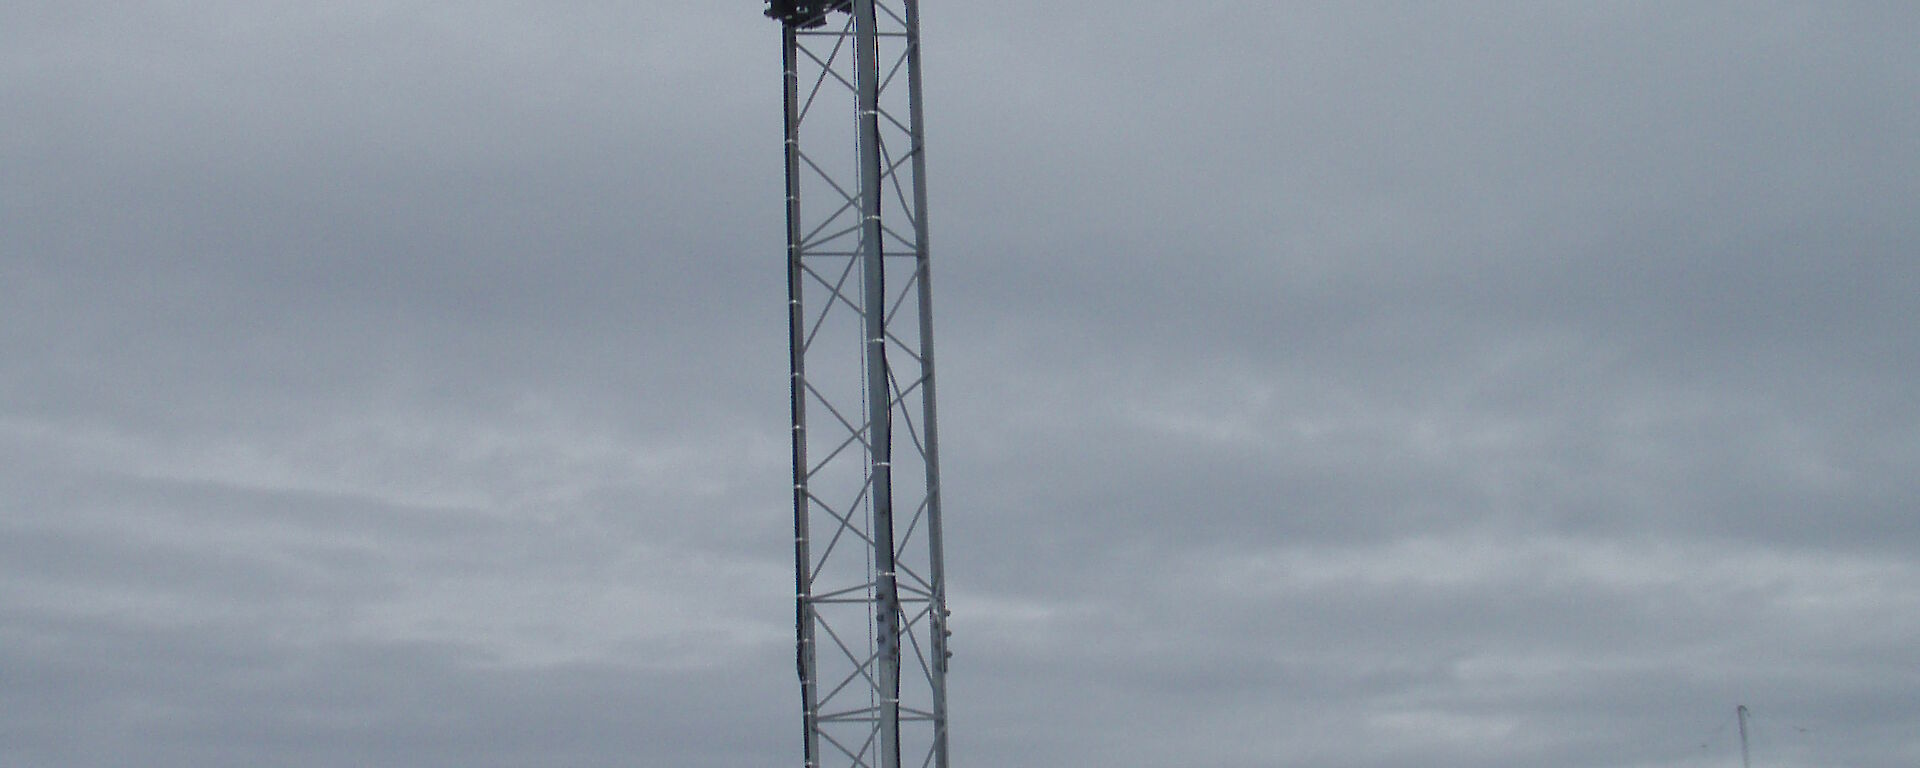 Jukka climbing radio mast